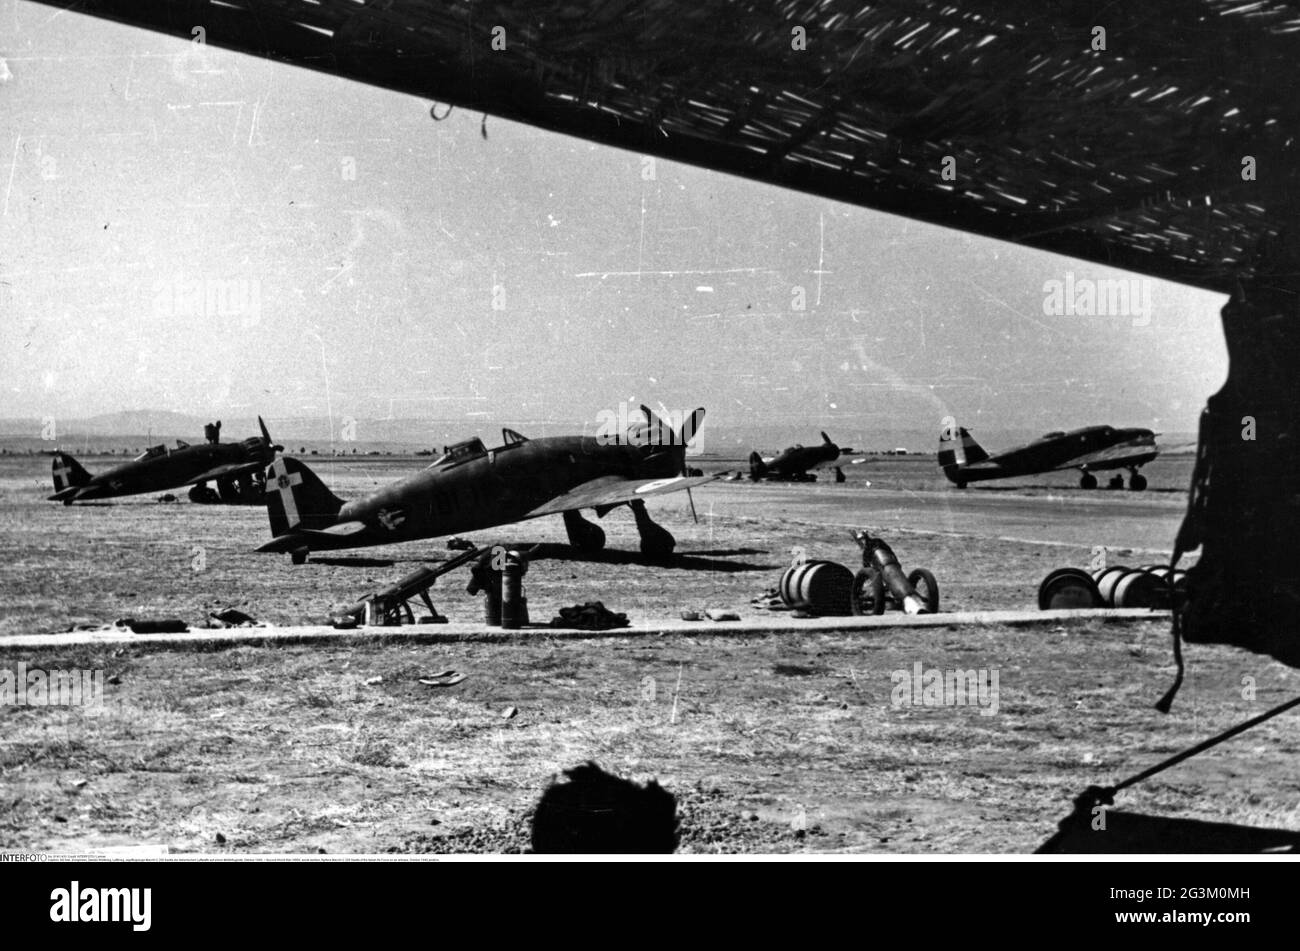 Seconda guerra mondiale / seconda guerra mondiale, guerra aerea, combattenti Macchi C. 200 Saetta dell'Aeronautica militare Italiana su base aerea, ottobre 1940, REDAZIONALE-USO-SOLO Foto Stock